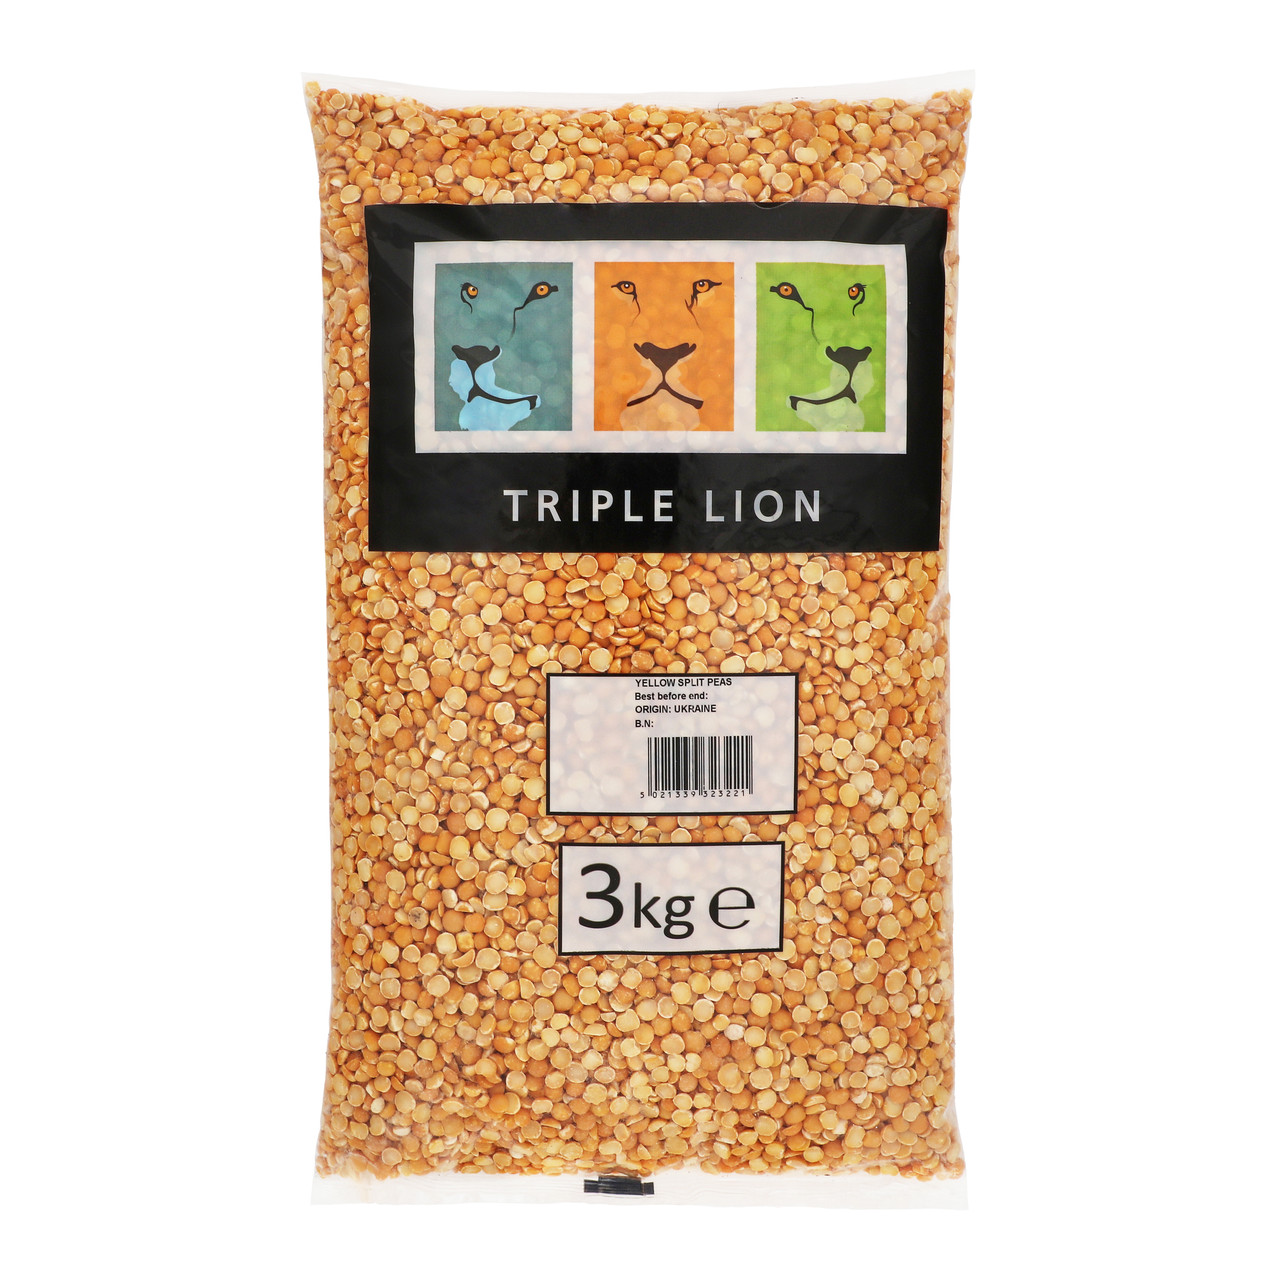 TRIPLE LION - YELLOW SPLIT PEAS - 3KG